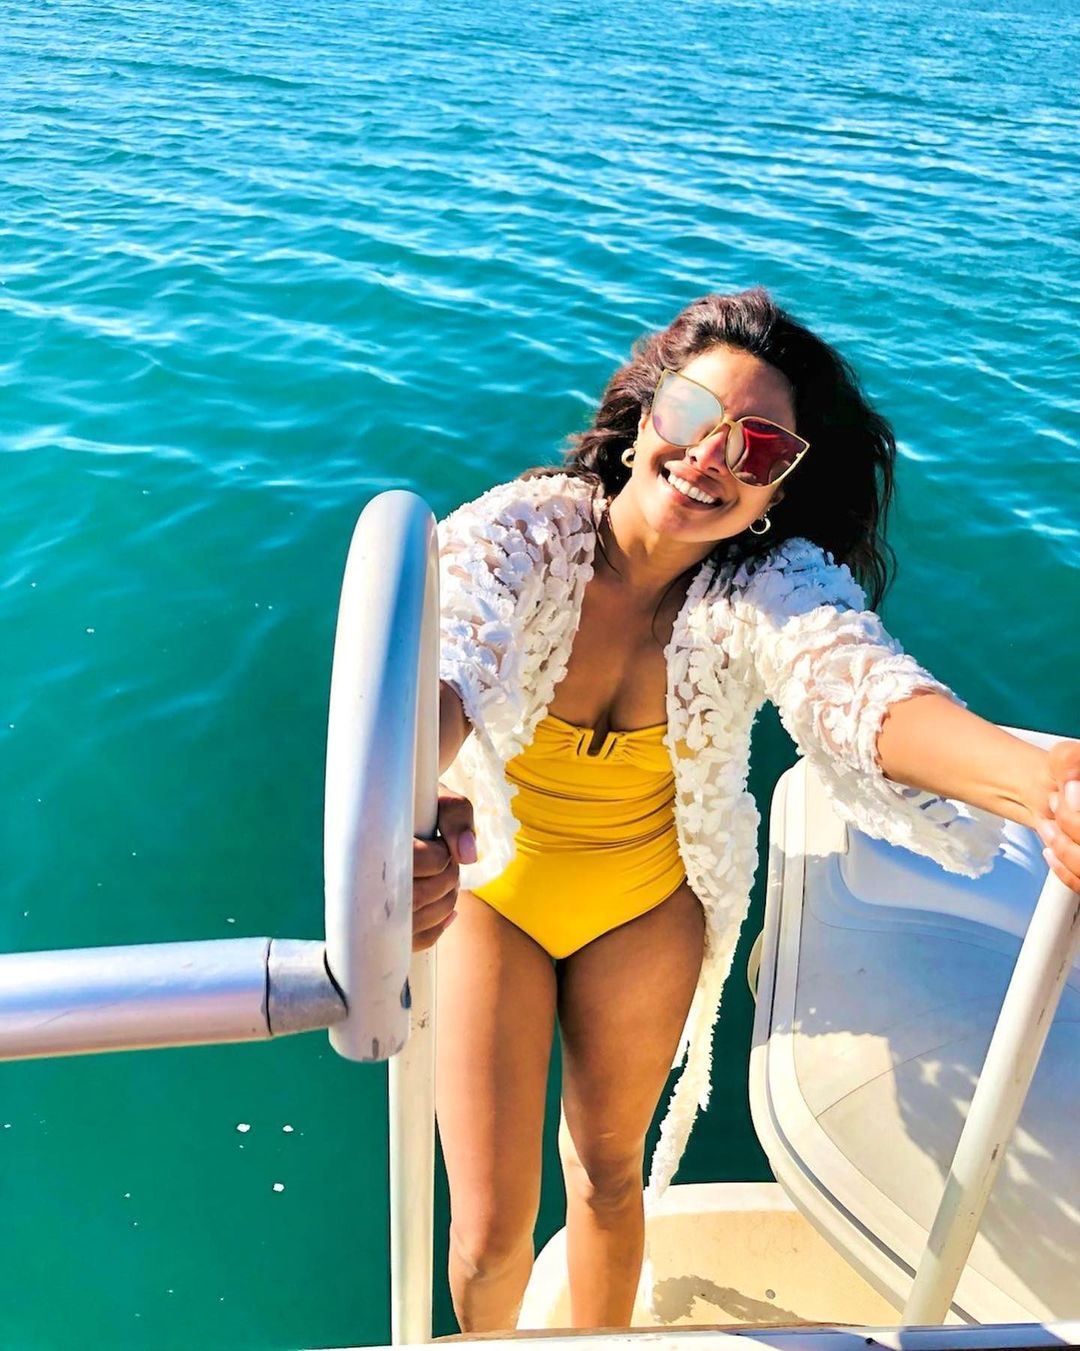 Fotos n°4 : Priyanka Chopra est en un barco!